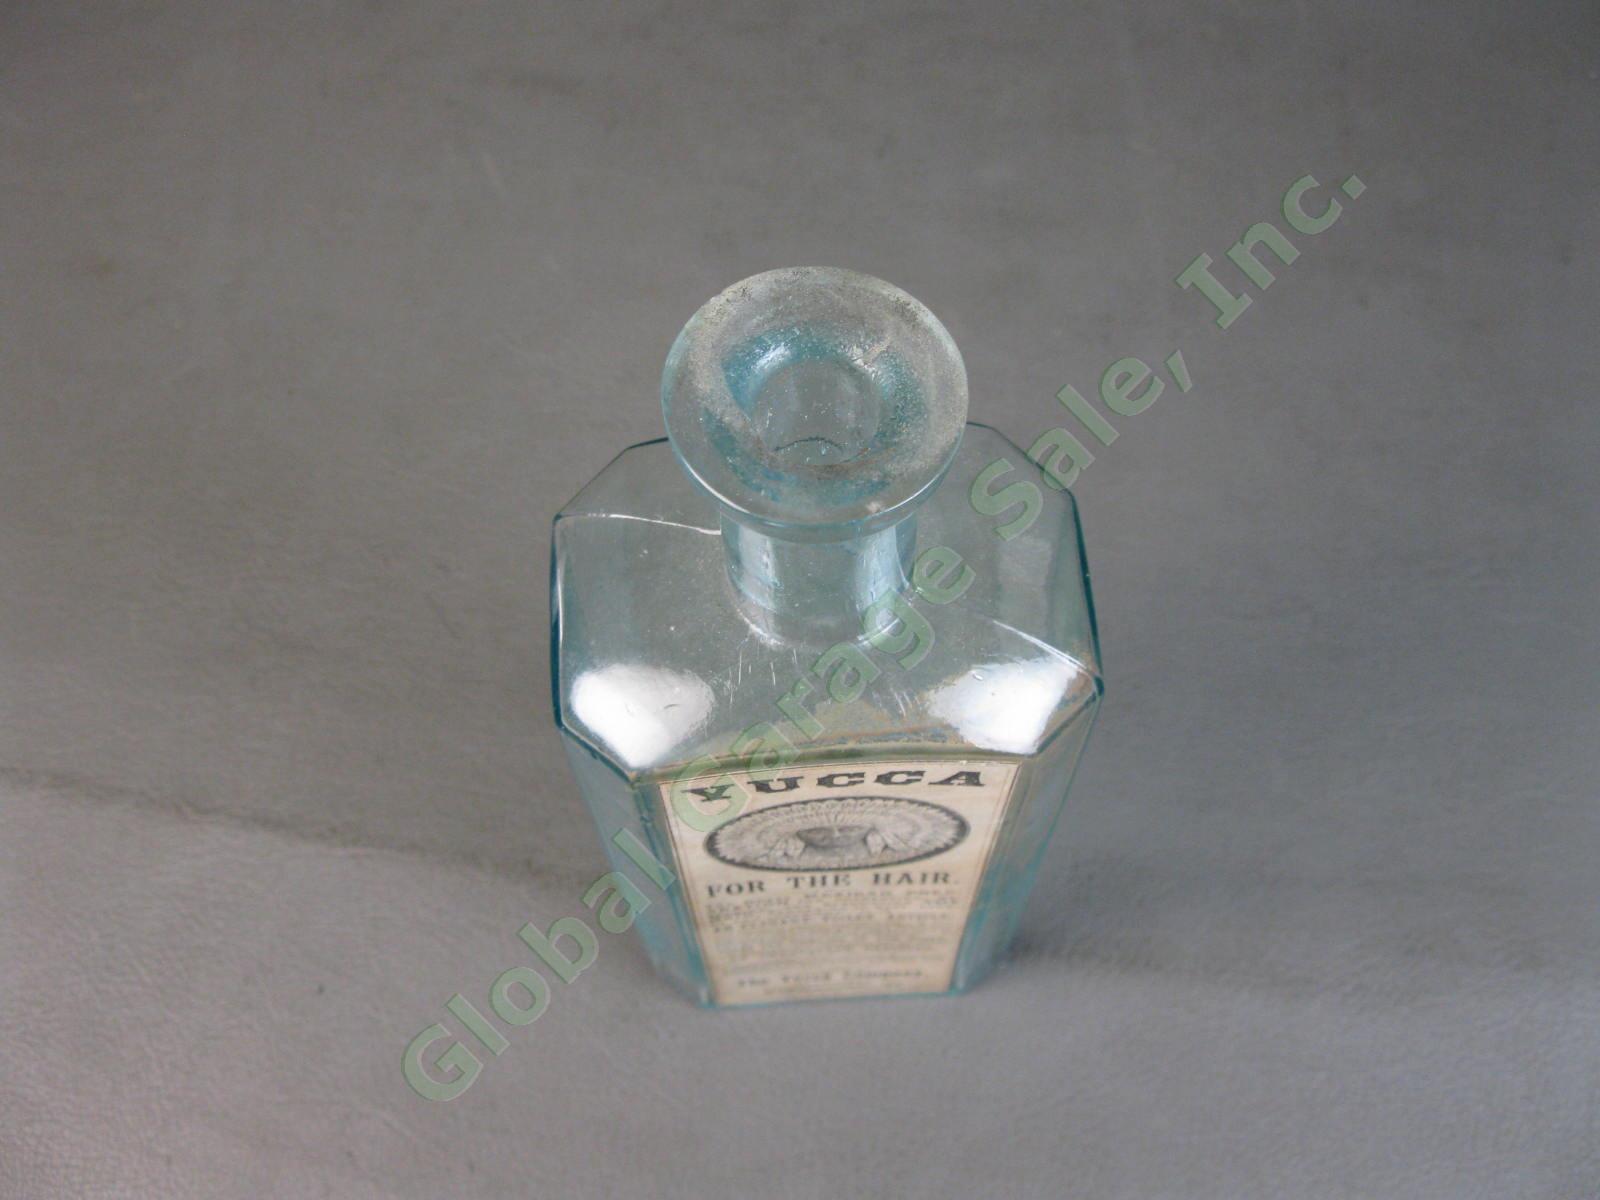 Antique Burlington Vermont Glass Bottle Yucca For The Hair Mexican Treatment NR 6